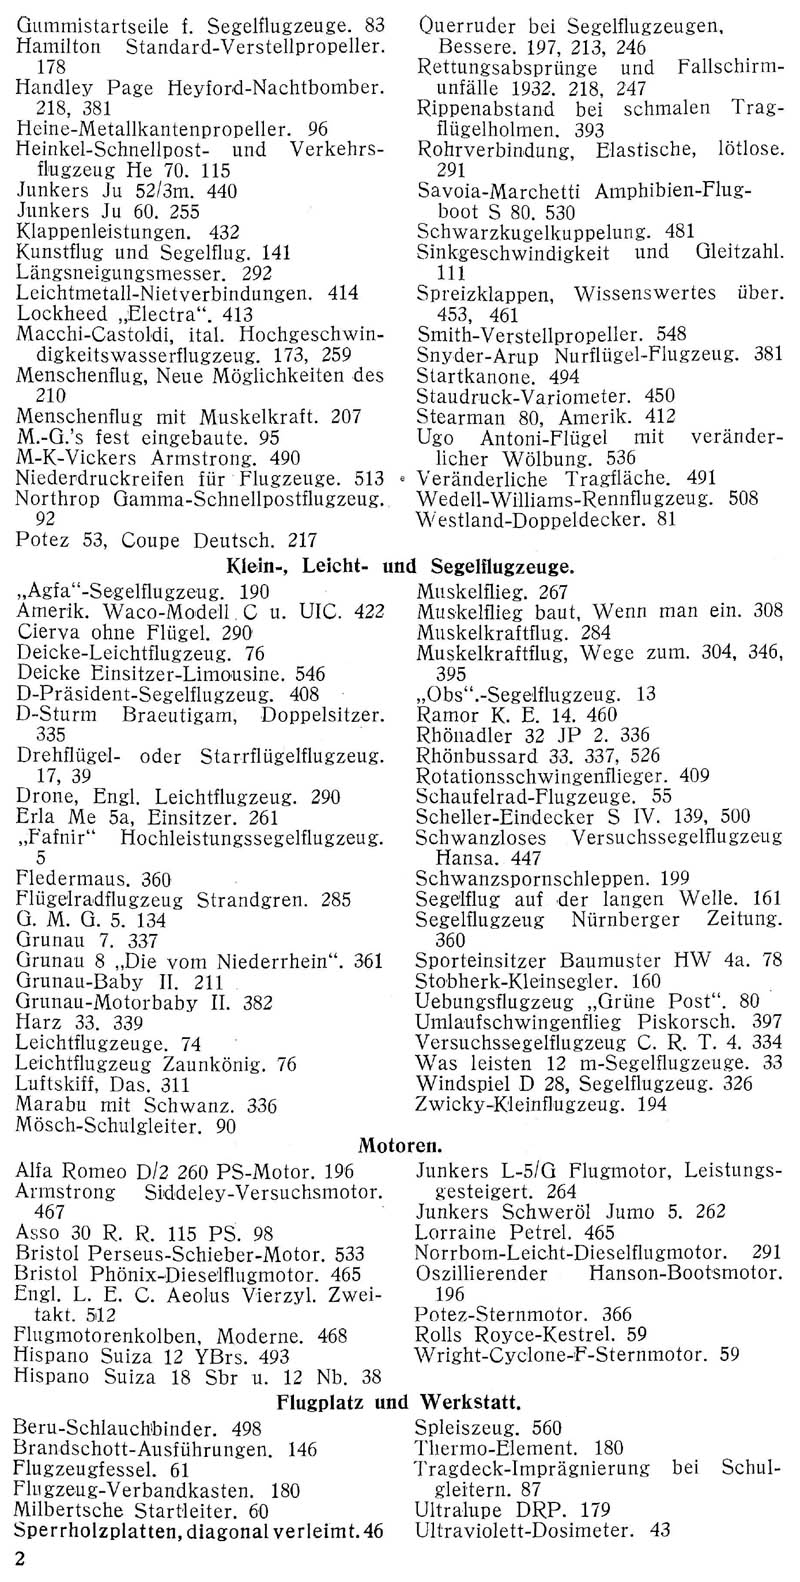 Sachregister und Inhaltsverzeichnis der Zeitschrift Flugsport für das Jahr 1933